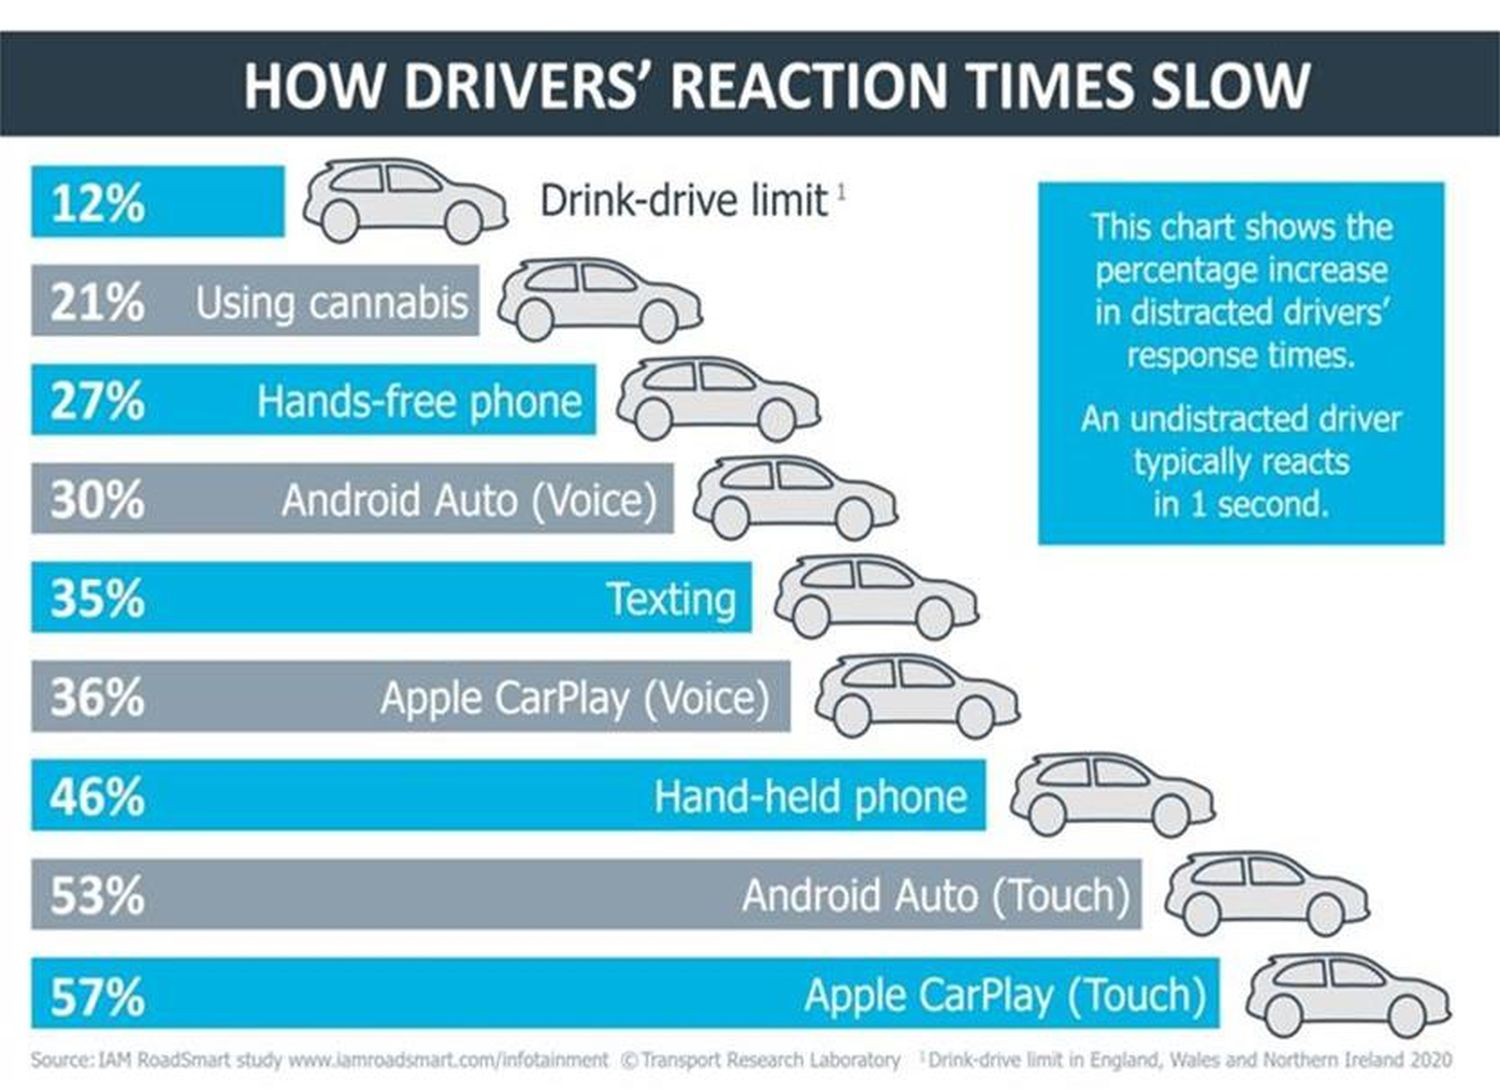 Eine neue Studie kommt nun zu dem Schluss, dass die Nutzung von Googles Android Auto oder Apples CarPlay während der Fahrt hochgradig gefährlich ist und den Fahrer sehr stark ablenken kann.